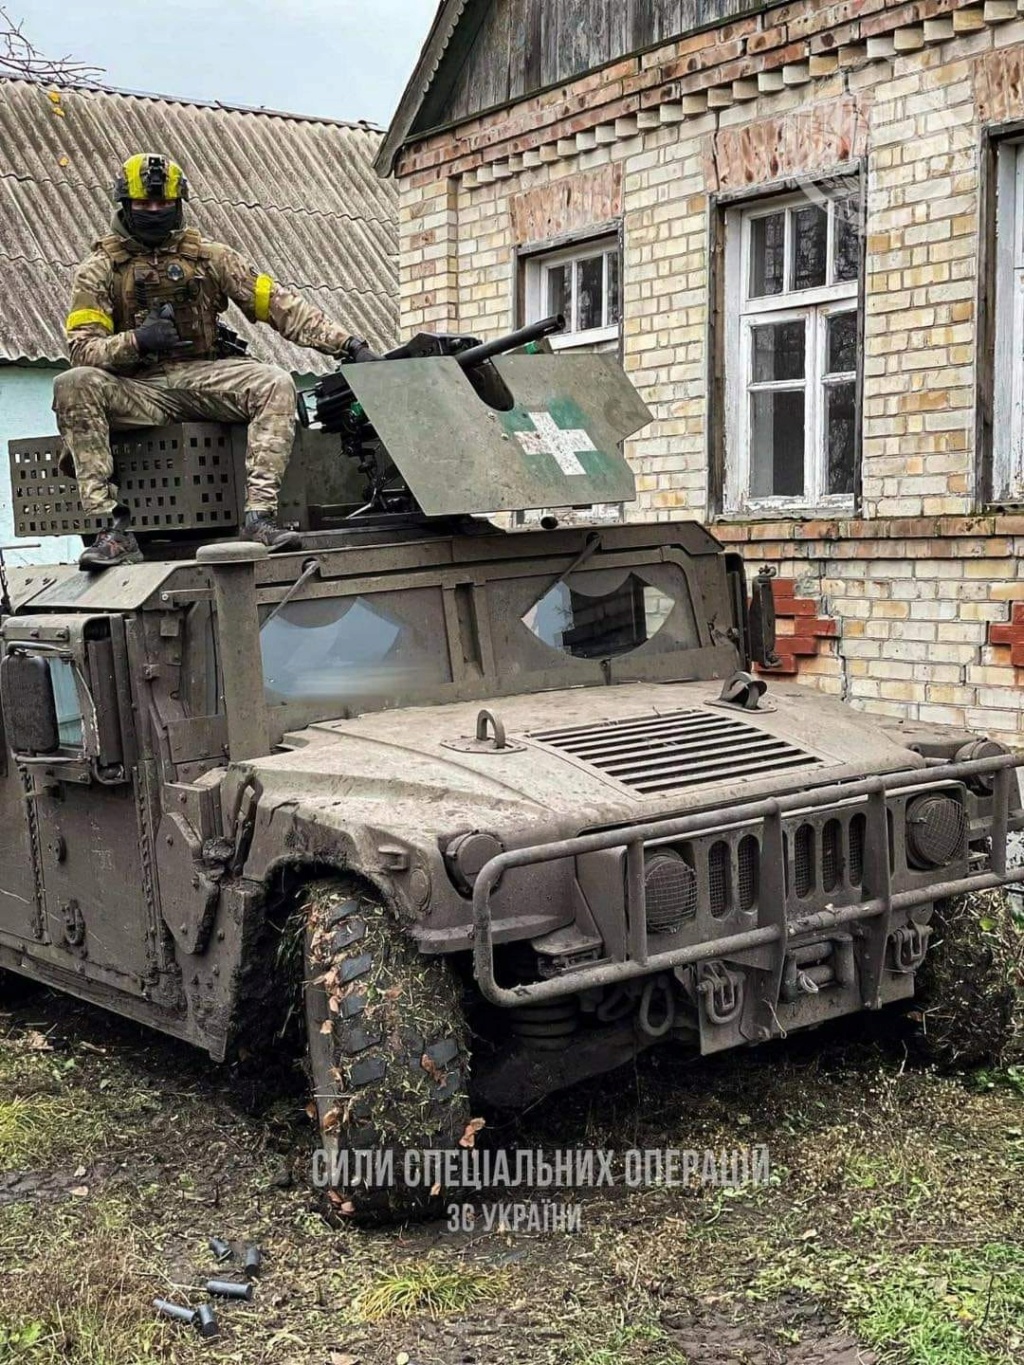 Envois de materiels militaires en Ukraine - Page 11 Zbakmu10